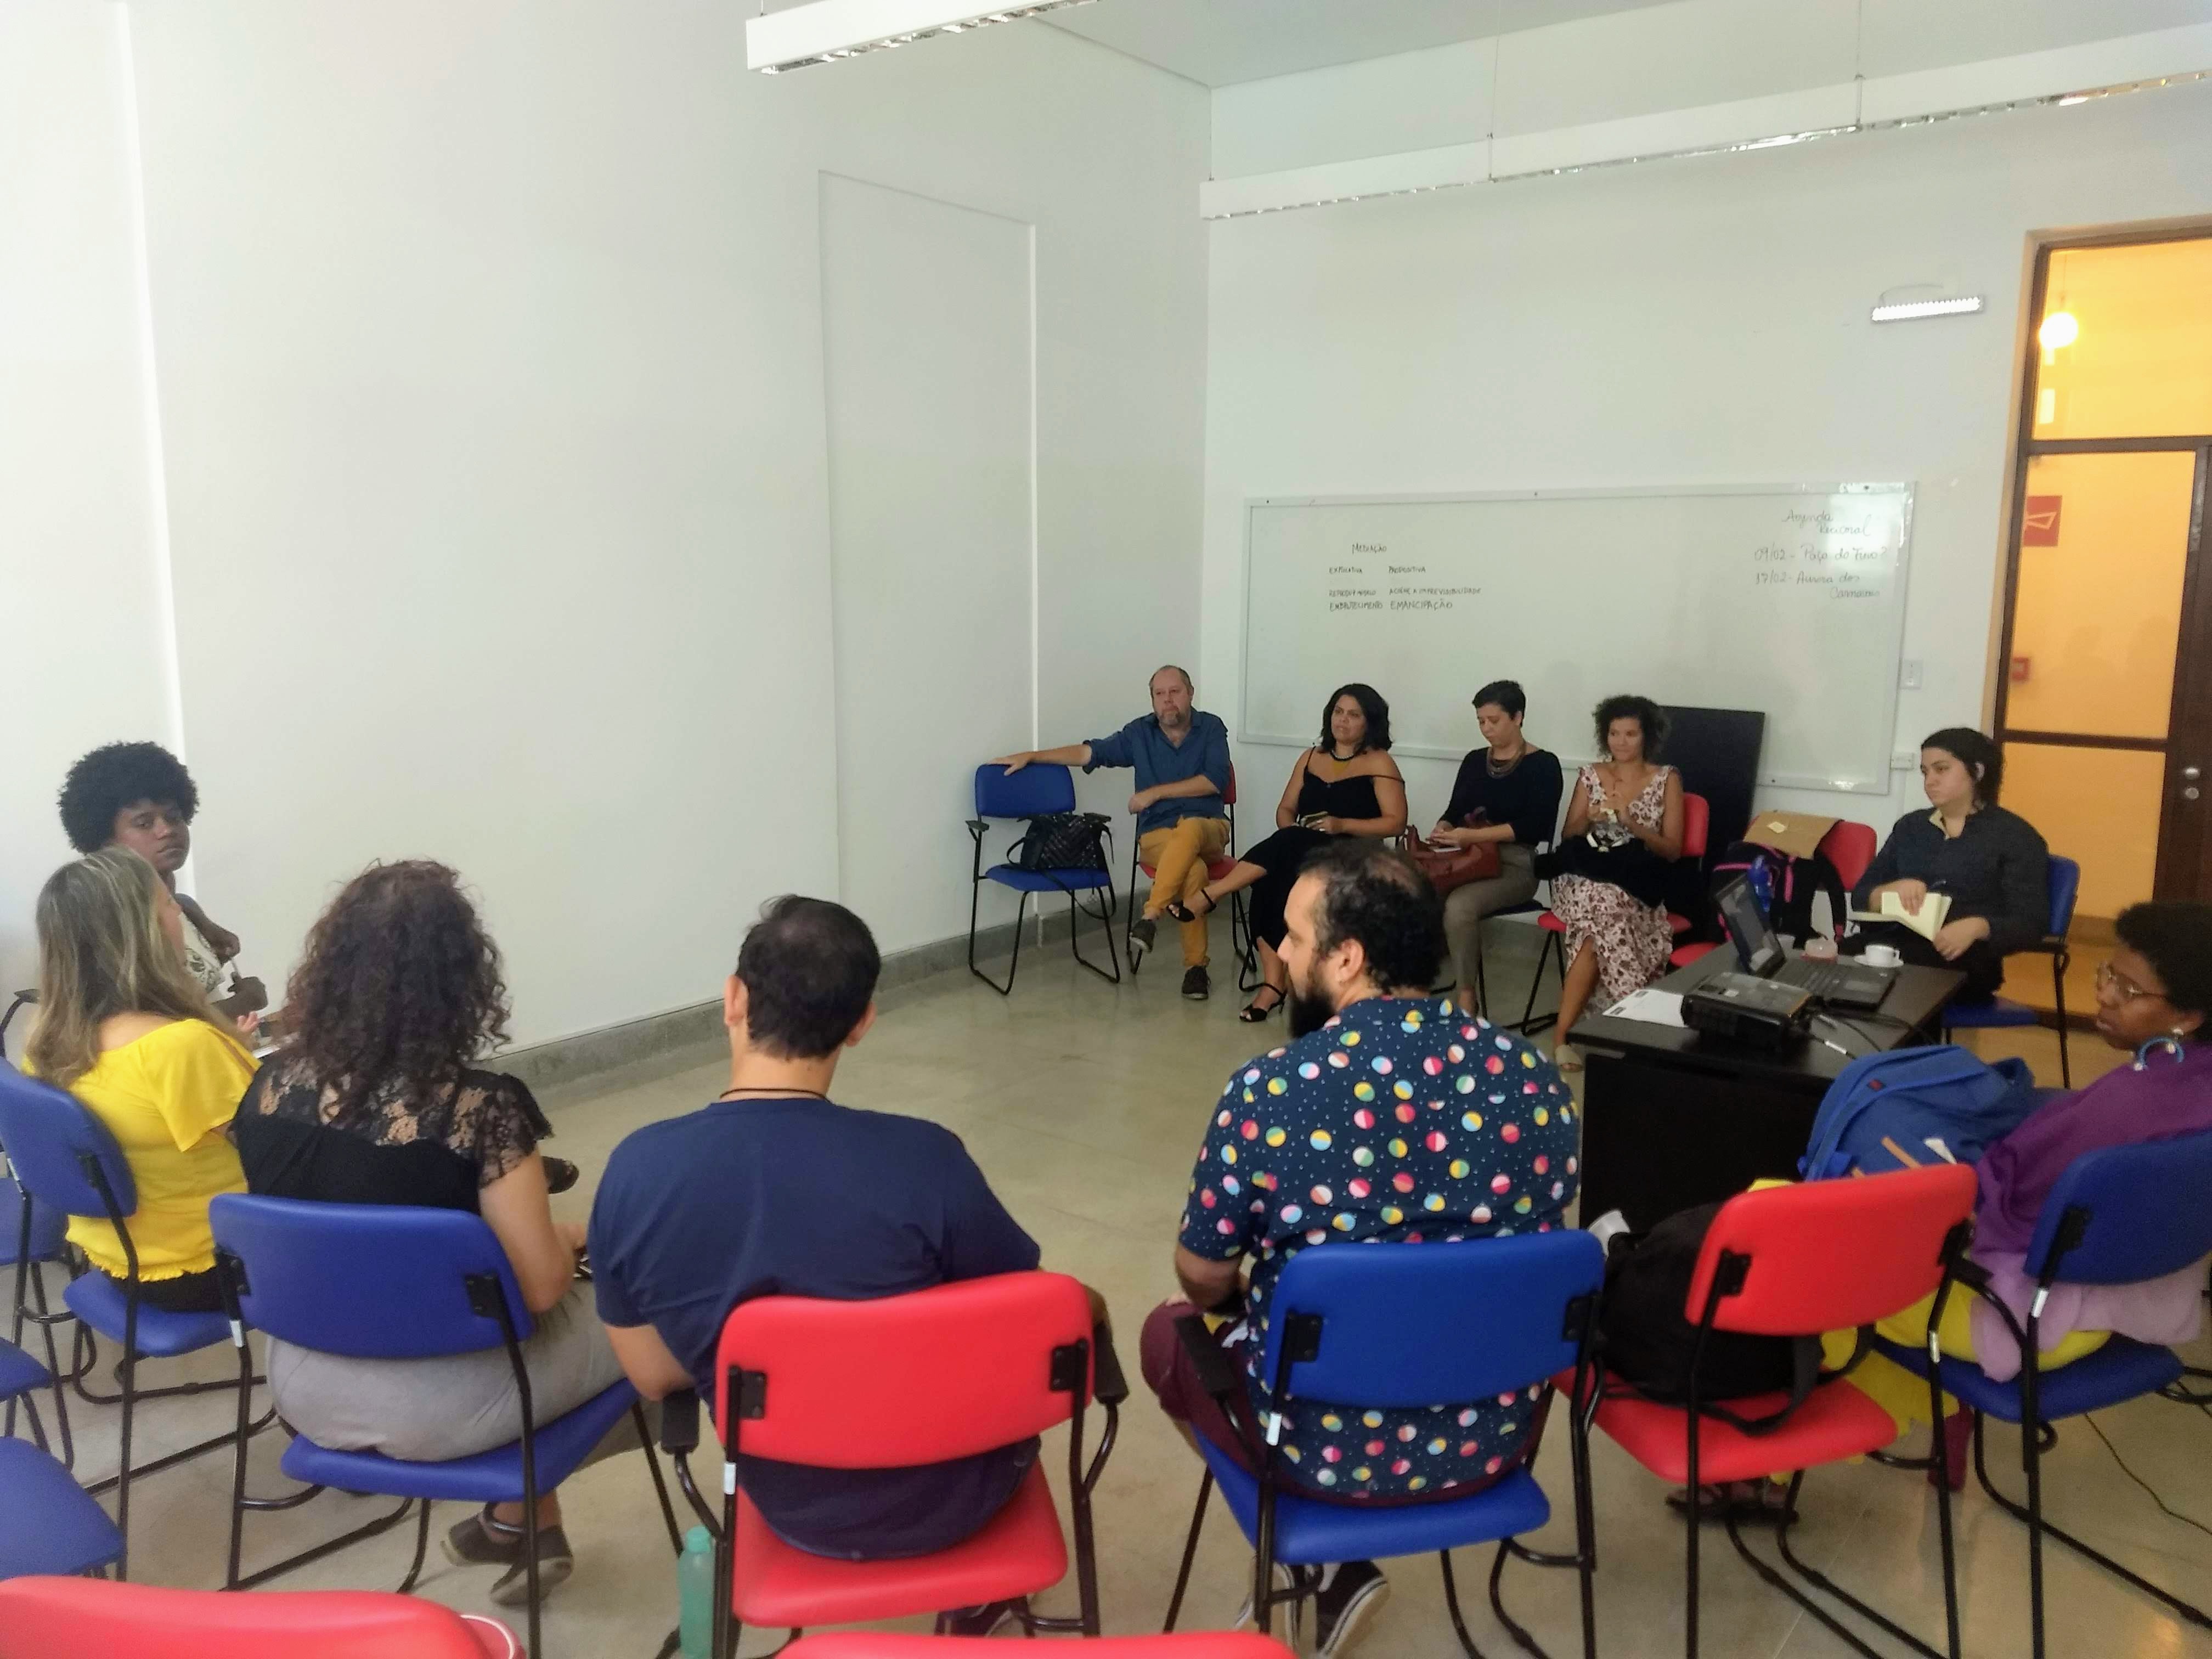 Representantes das instituições que compõem o GT se reunem em sala no Paço do Frevo. Foto: Maíra Brandão